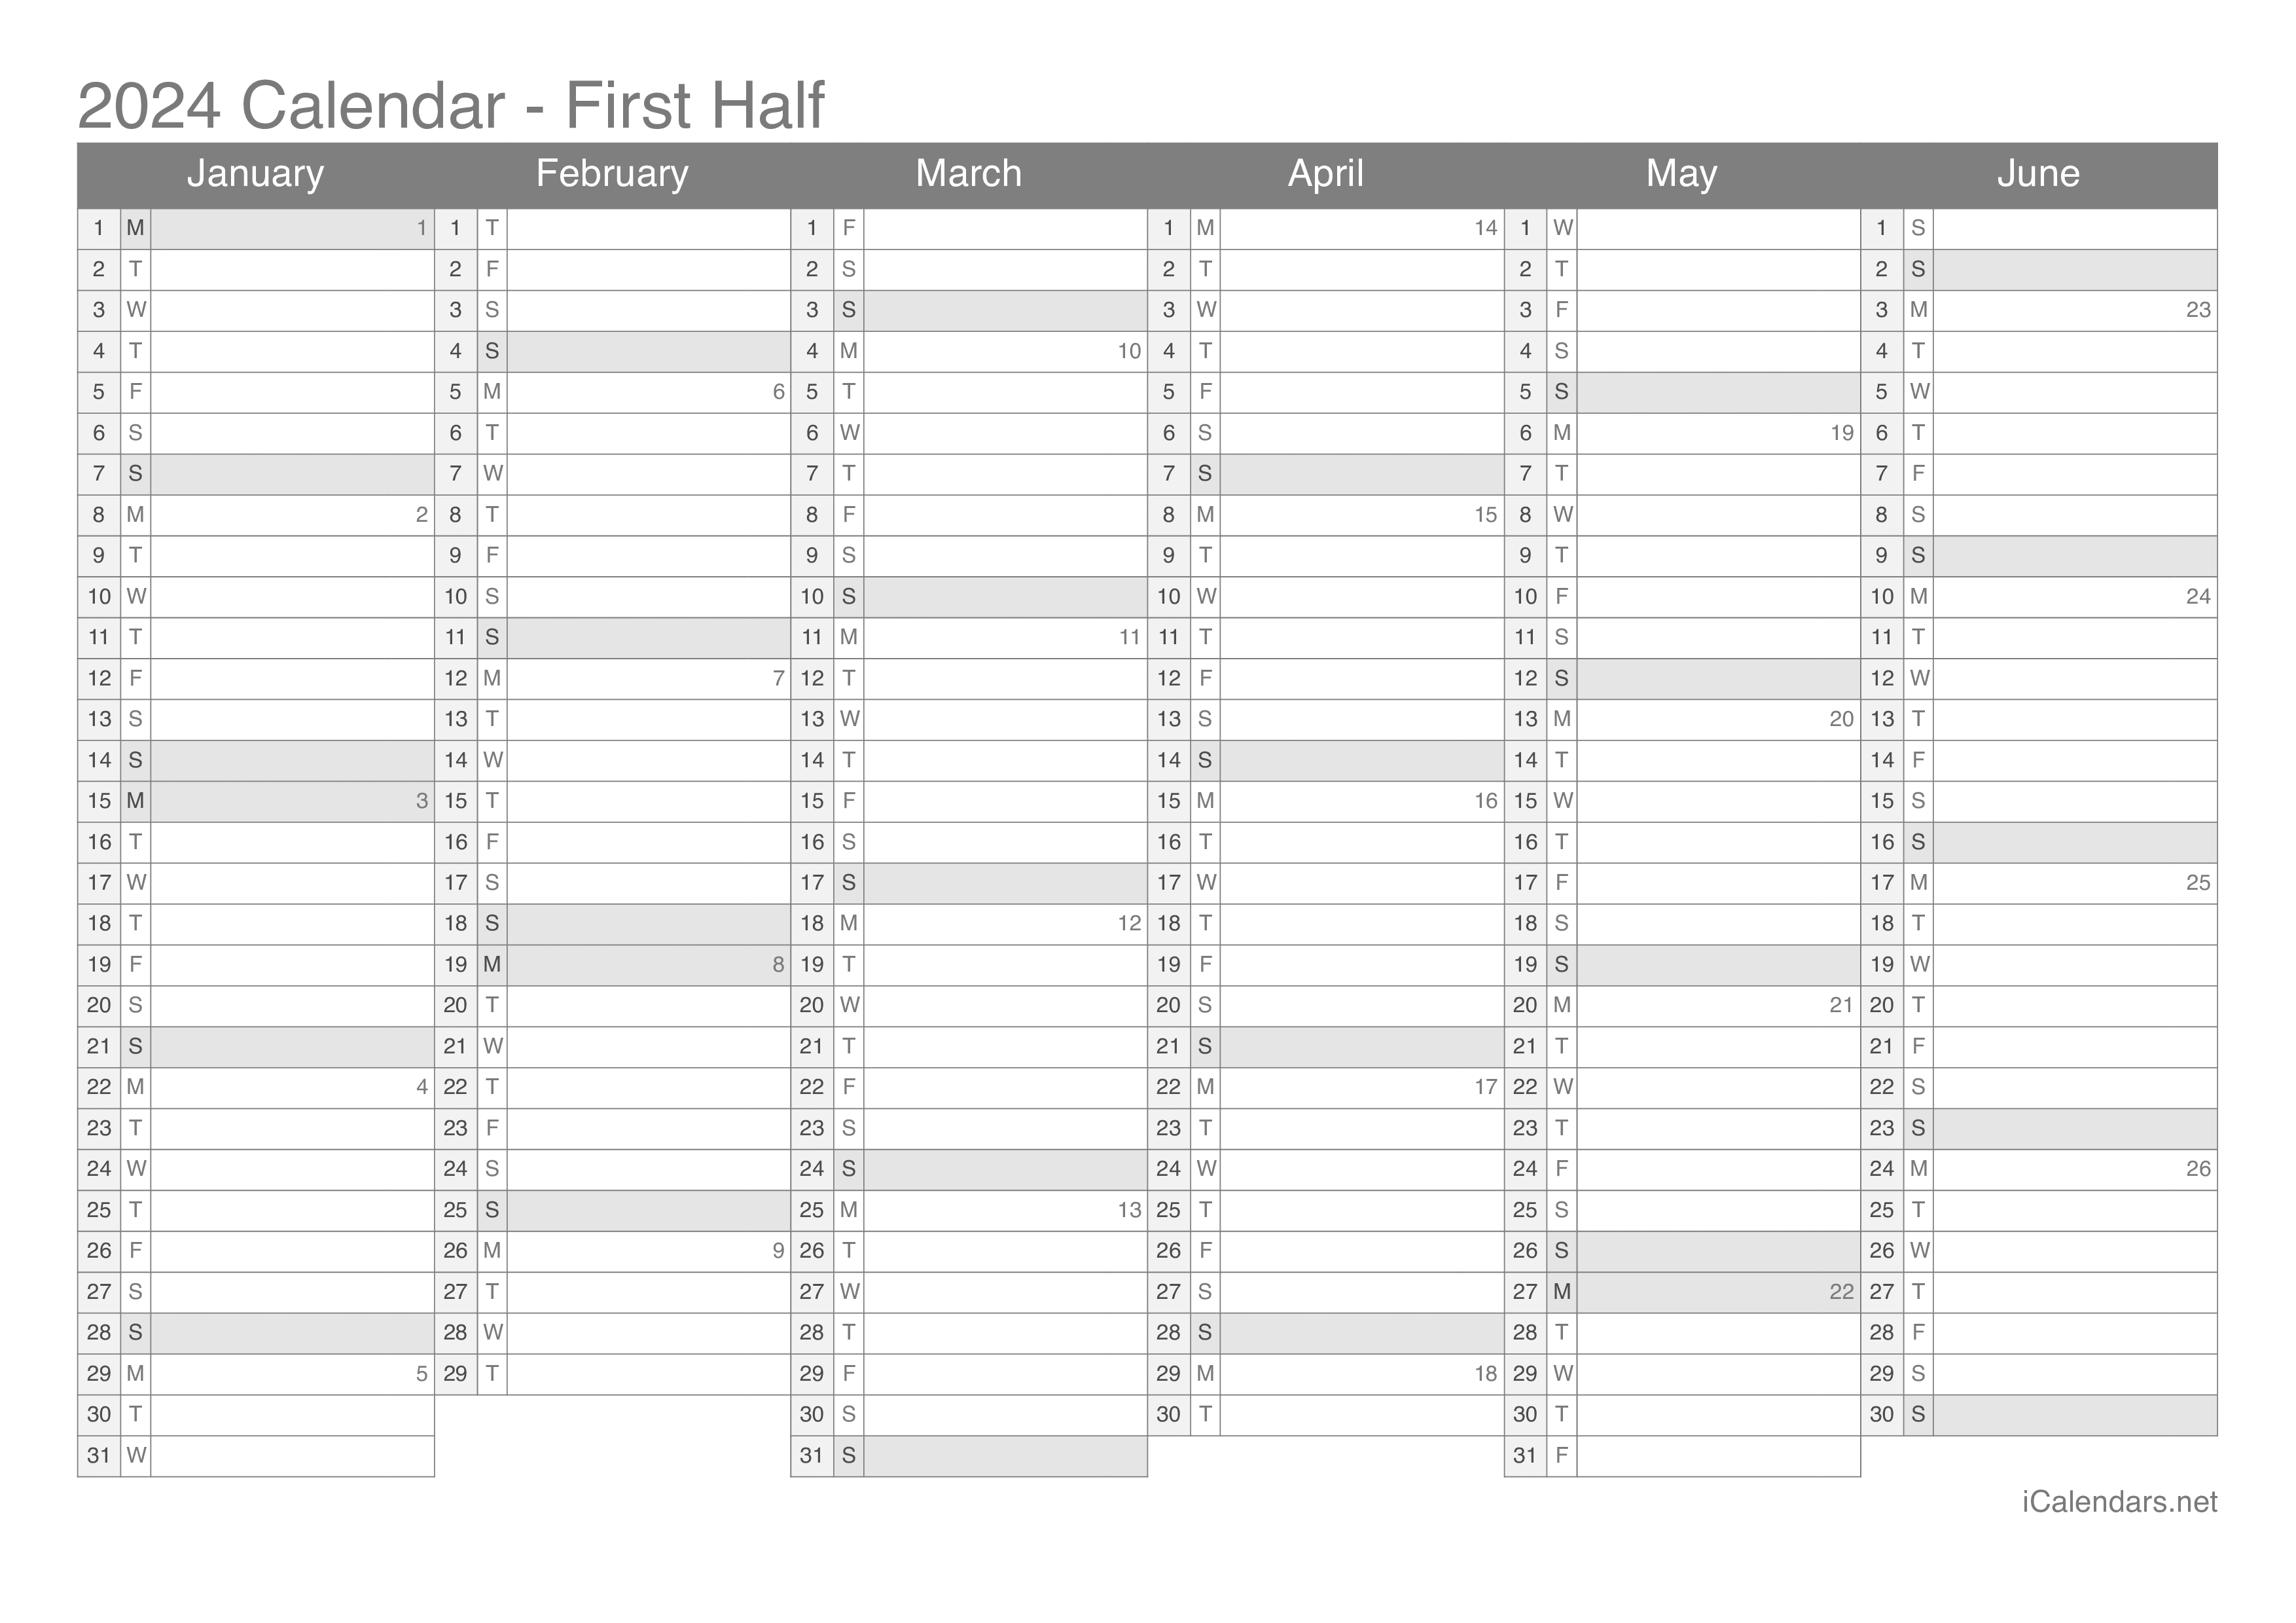 Calendario Excel 2024 GfT6h_Hkhq2VOM